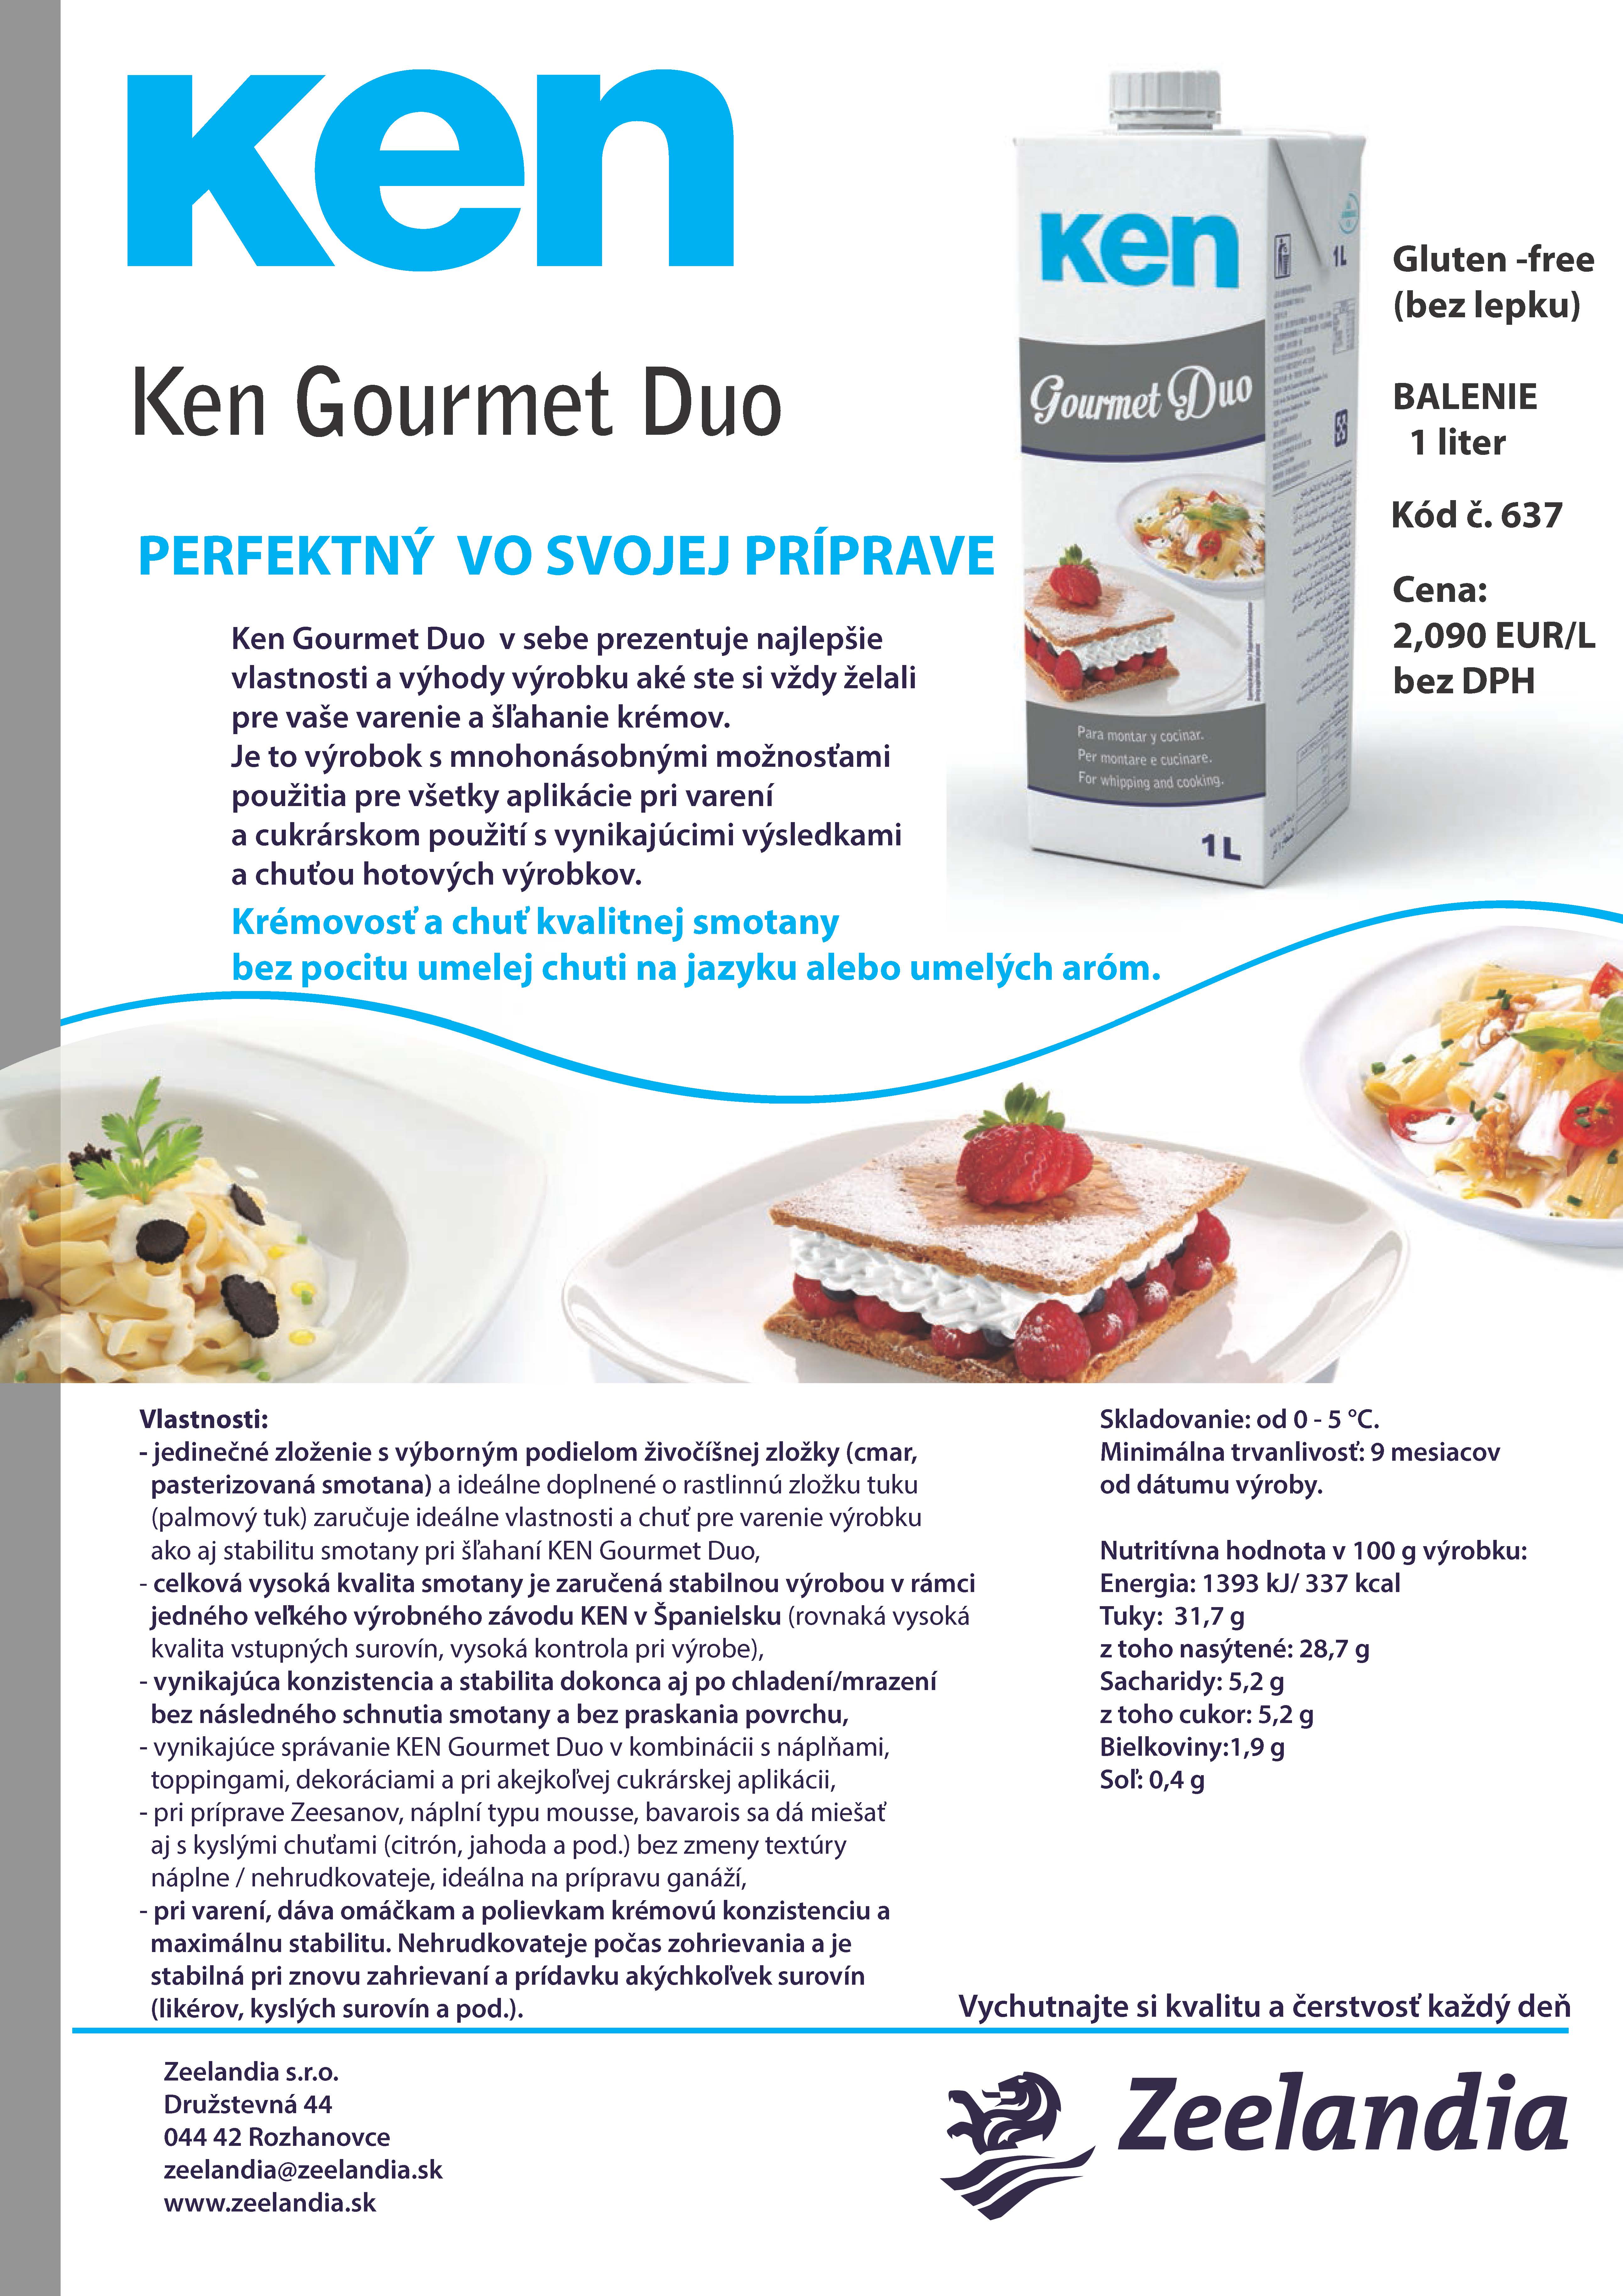 Ken Gourmet Duo